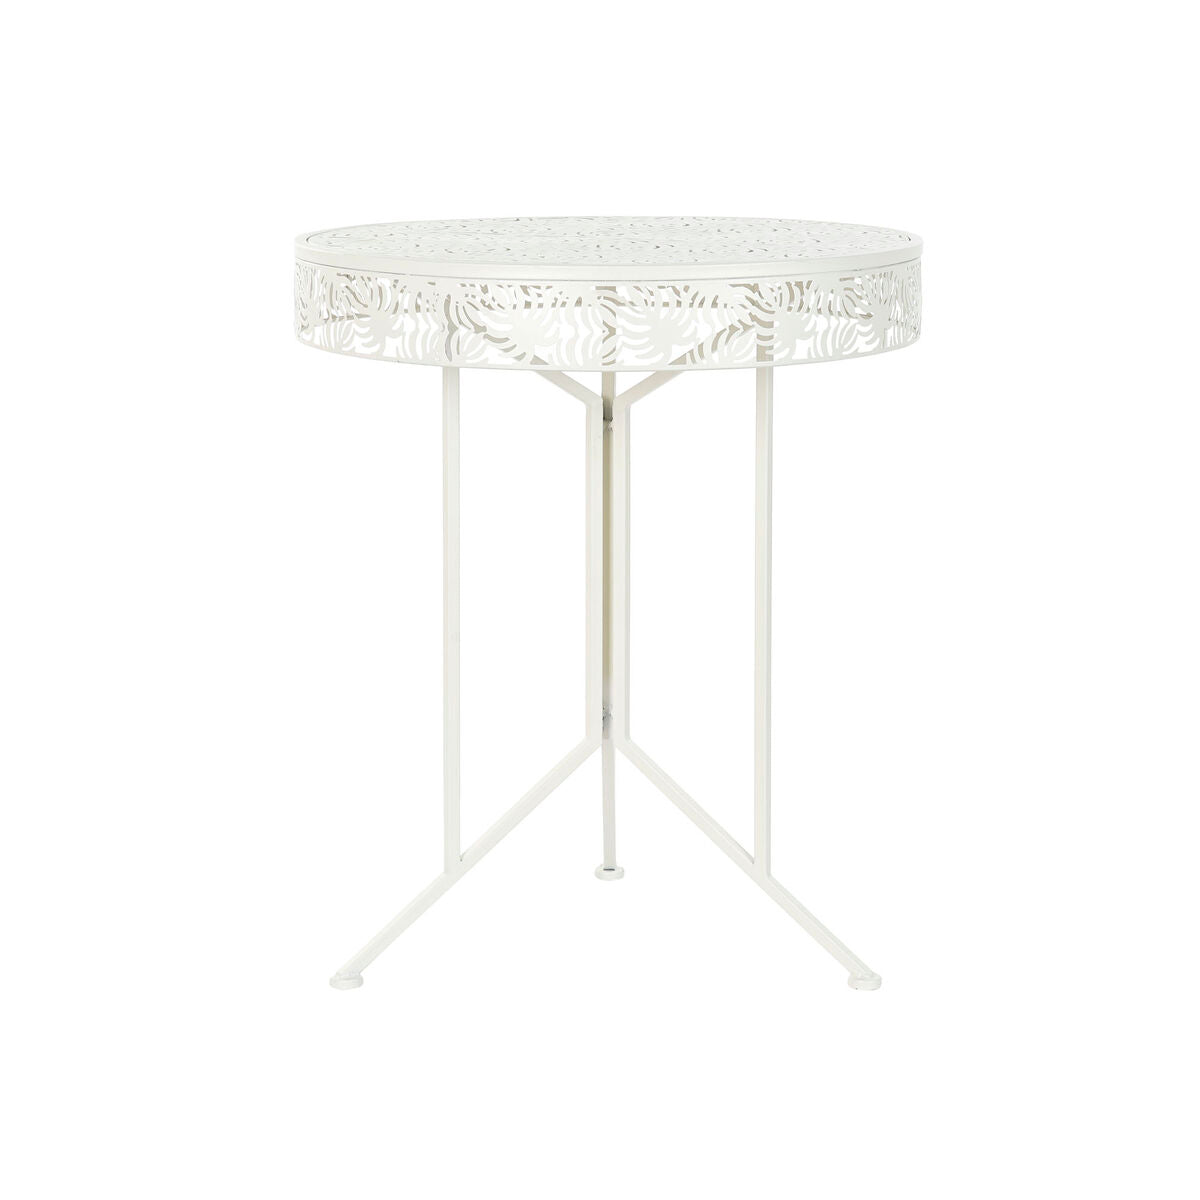 Table d'appoint Tropicale en Métal Blanc Home Decor (60 x 60 x 70 cm)